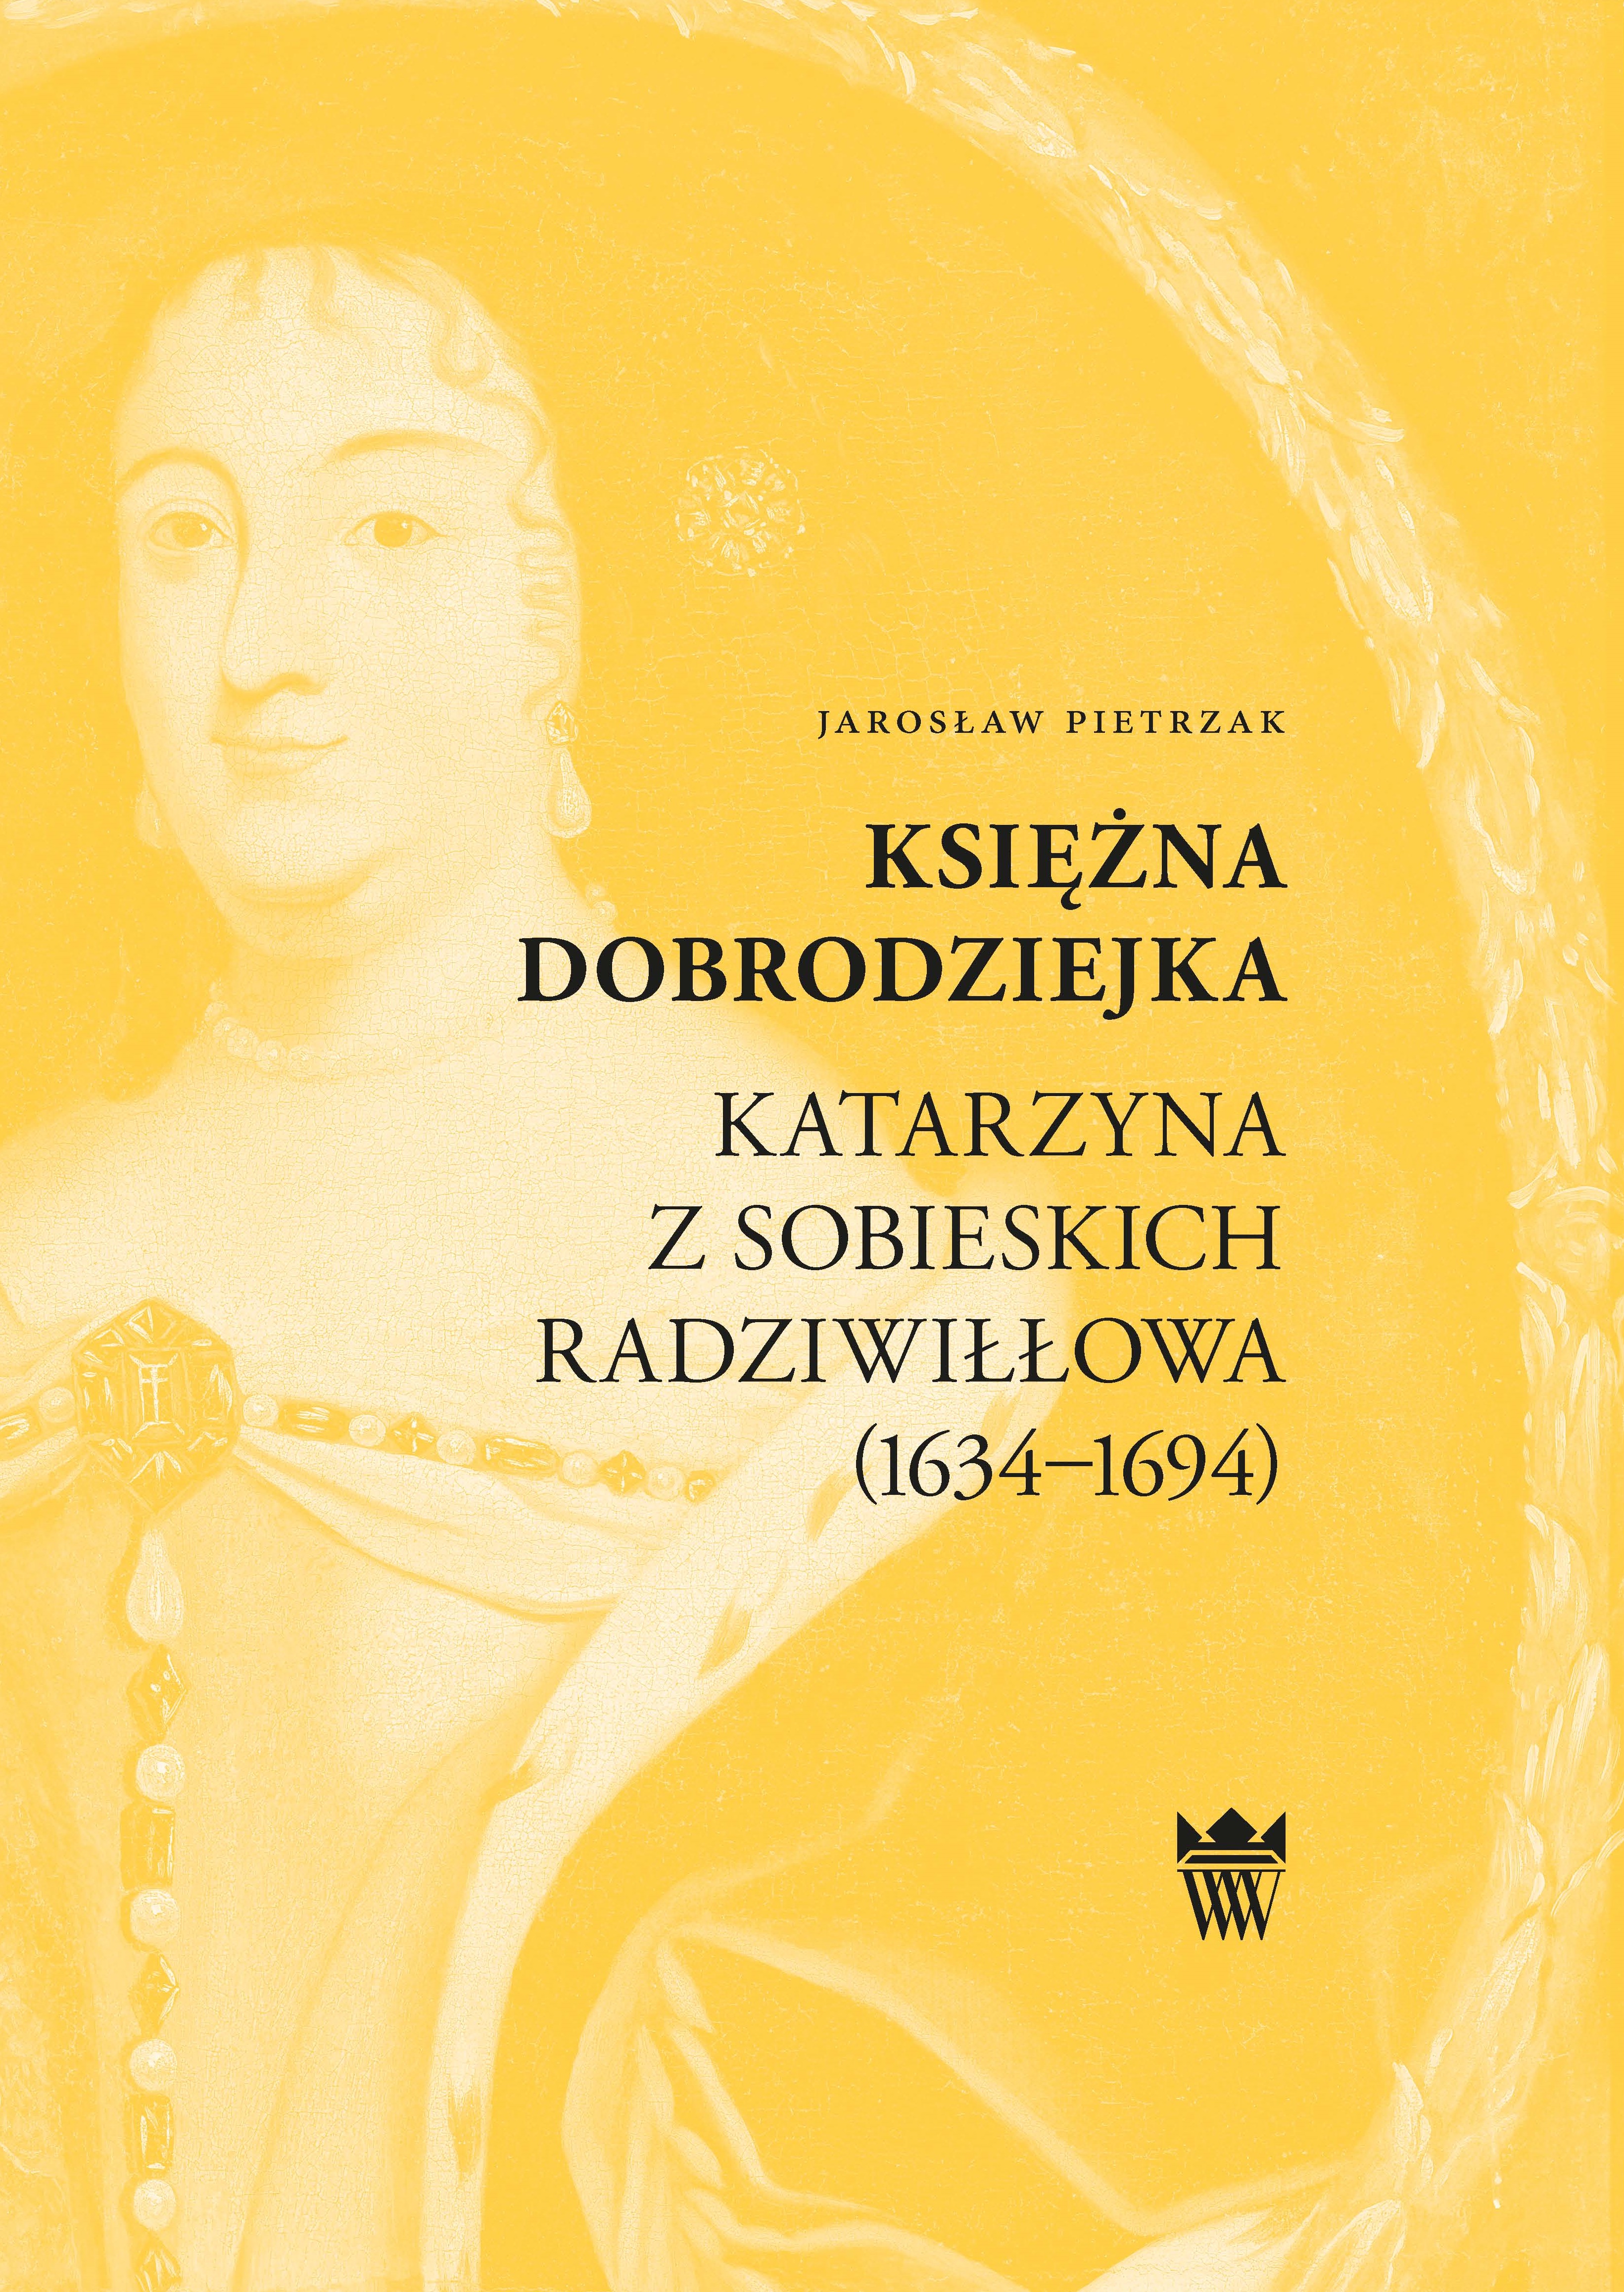 Jarosław Pietrzak, Księżna dobrodziejka. Katarzyna z Sobieskich Radziwiłłowa (1634–1694)